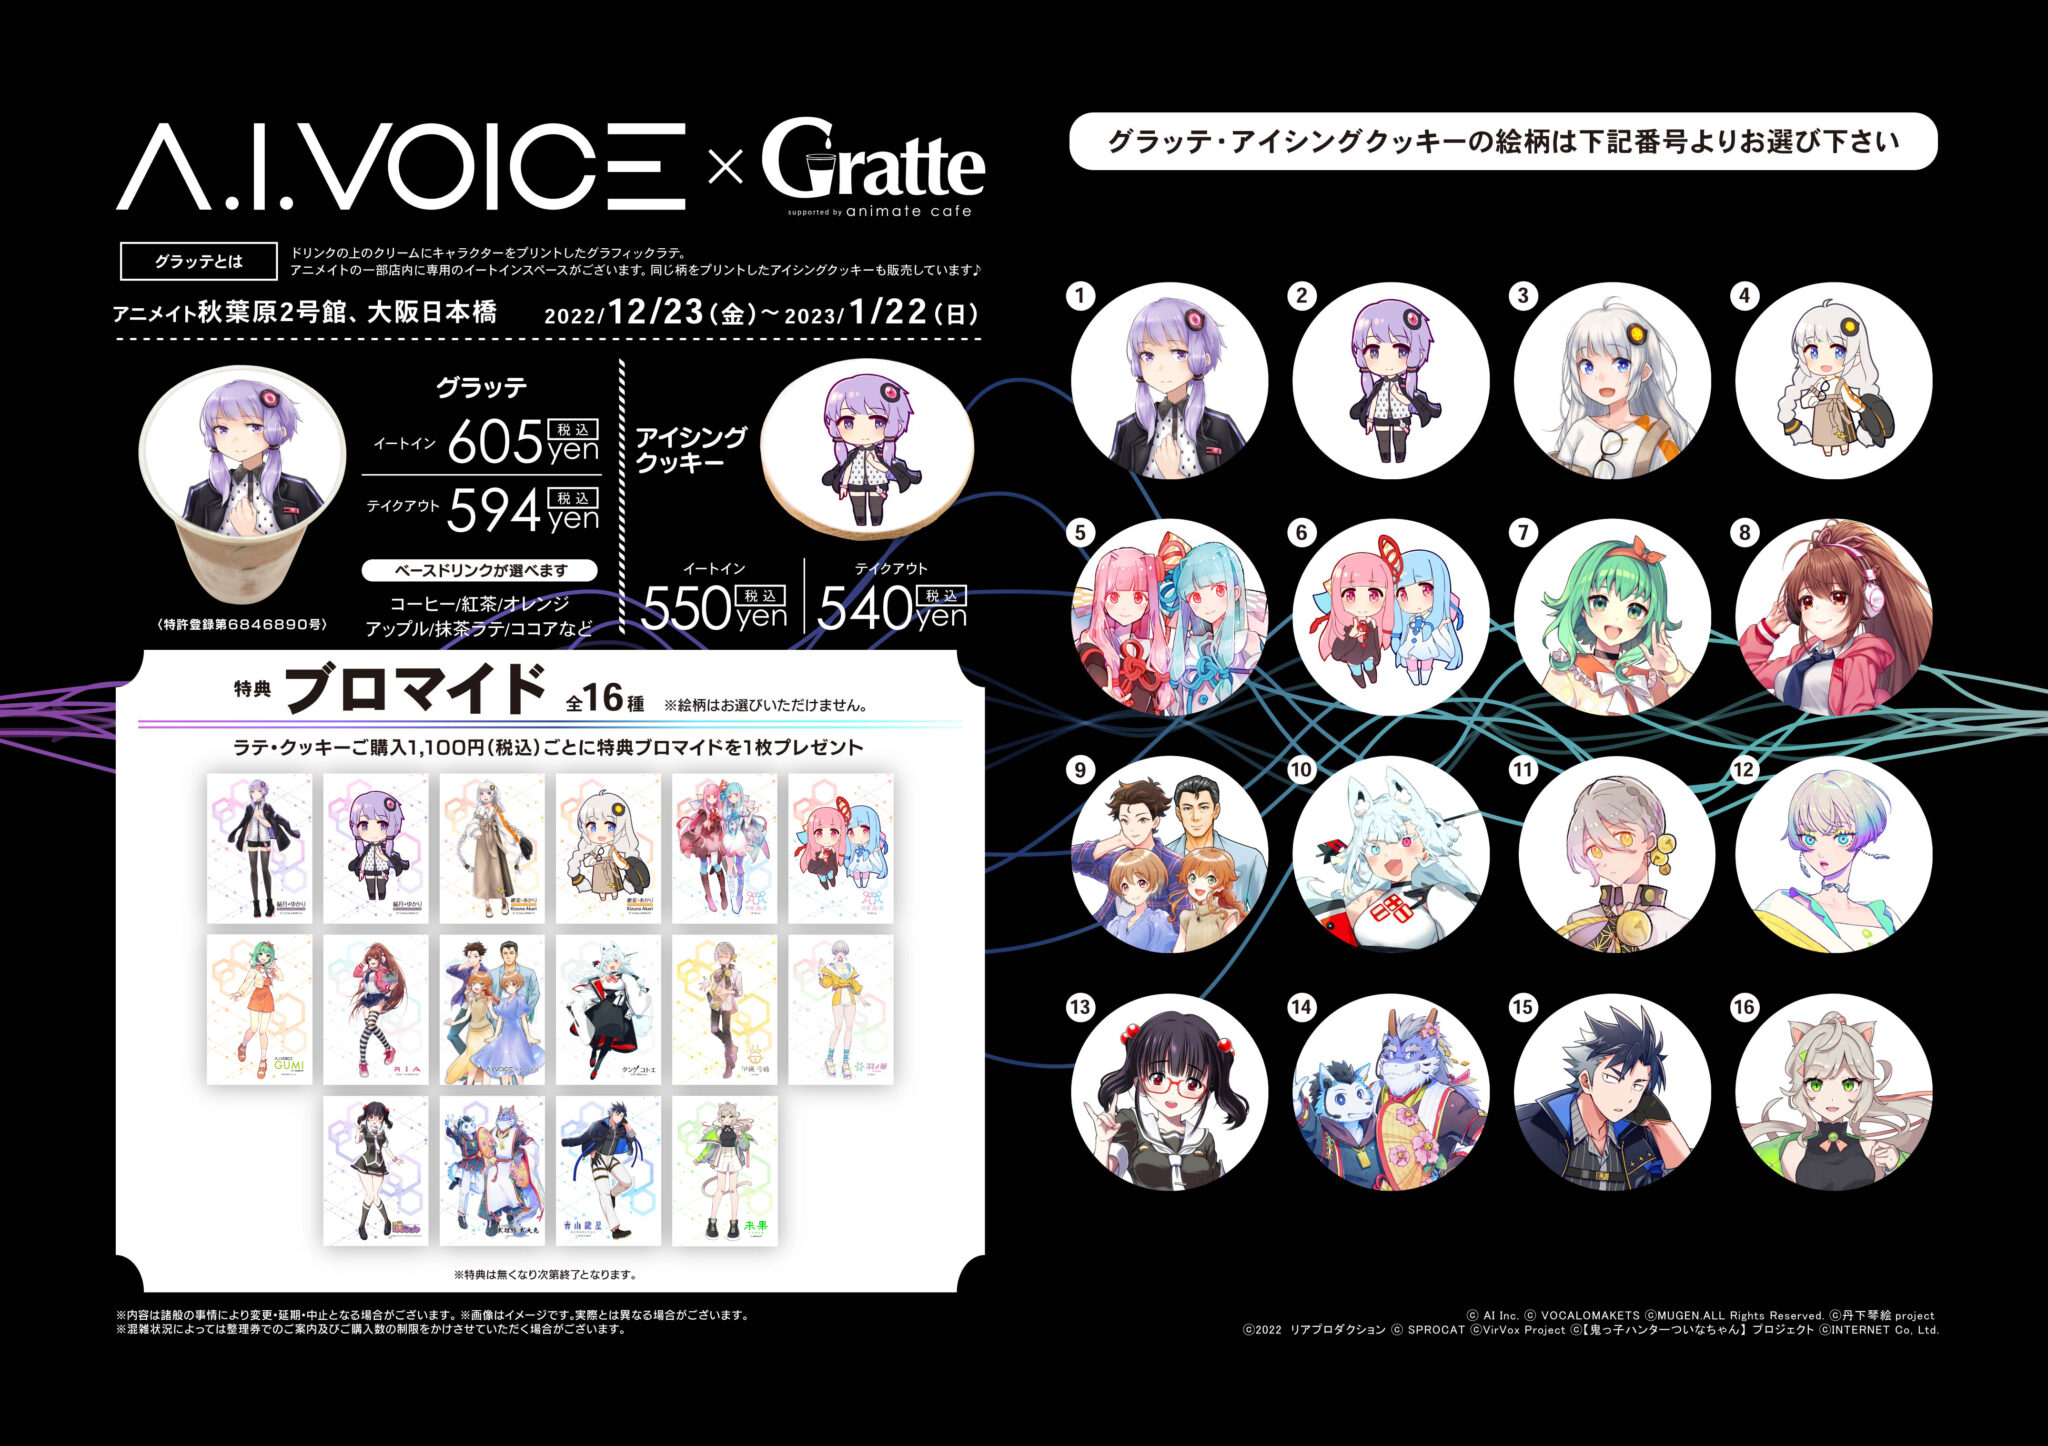 A.I.VOICE × Gratte コラボがアニメイト秋葉原・大阪日本橋で開催